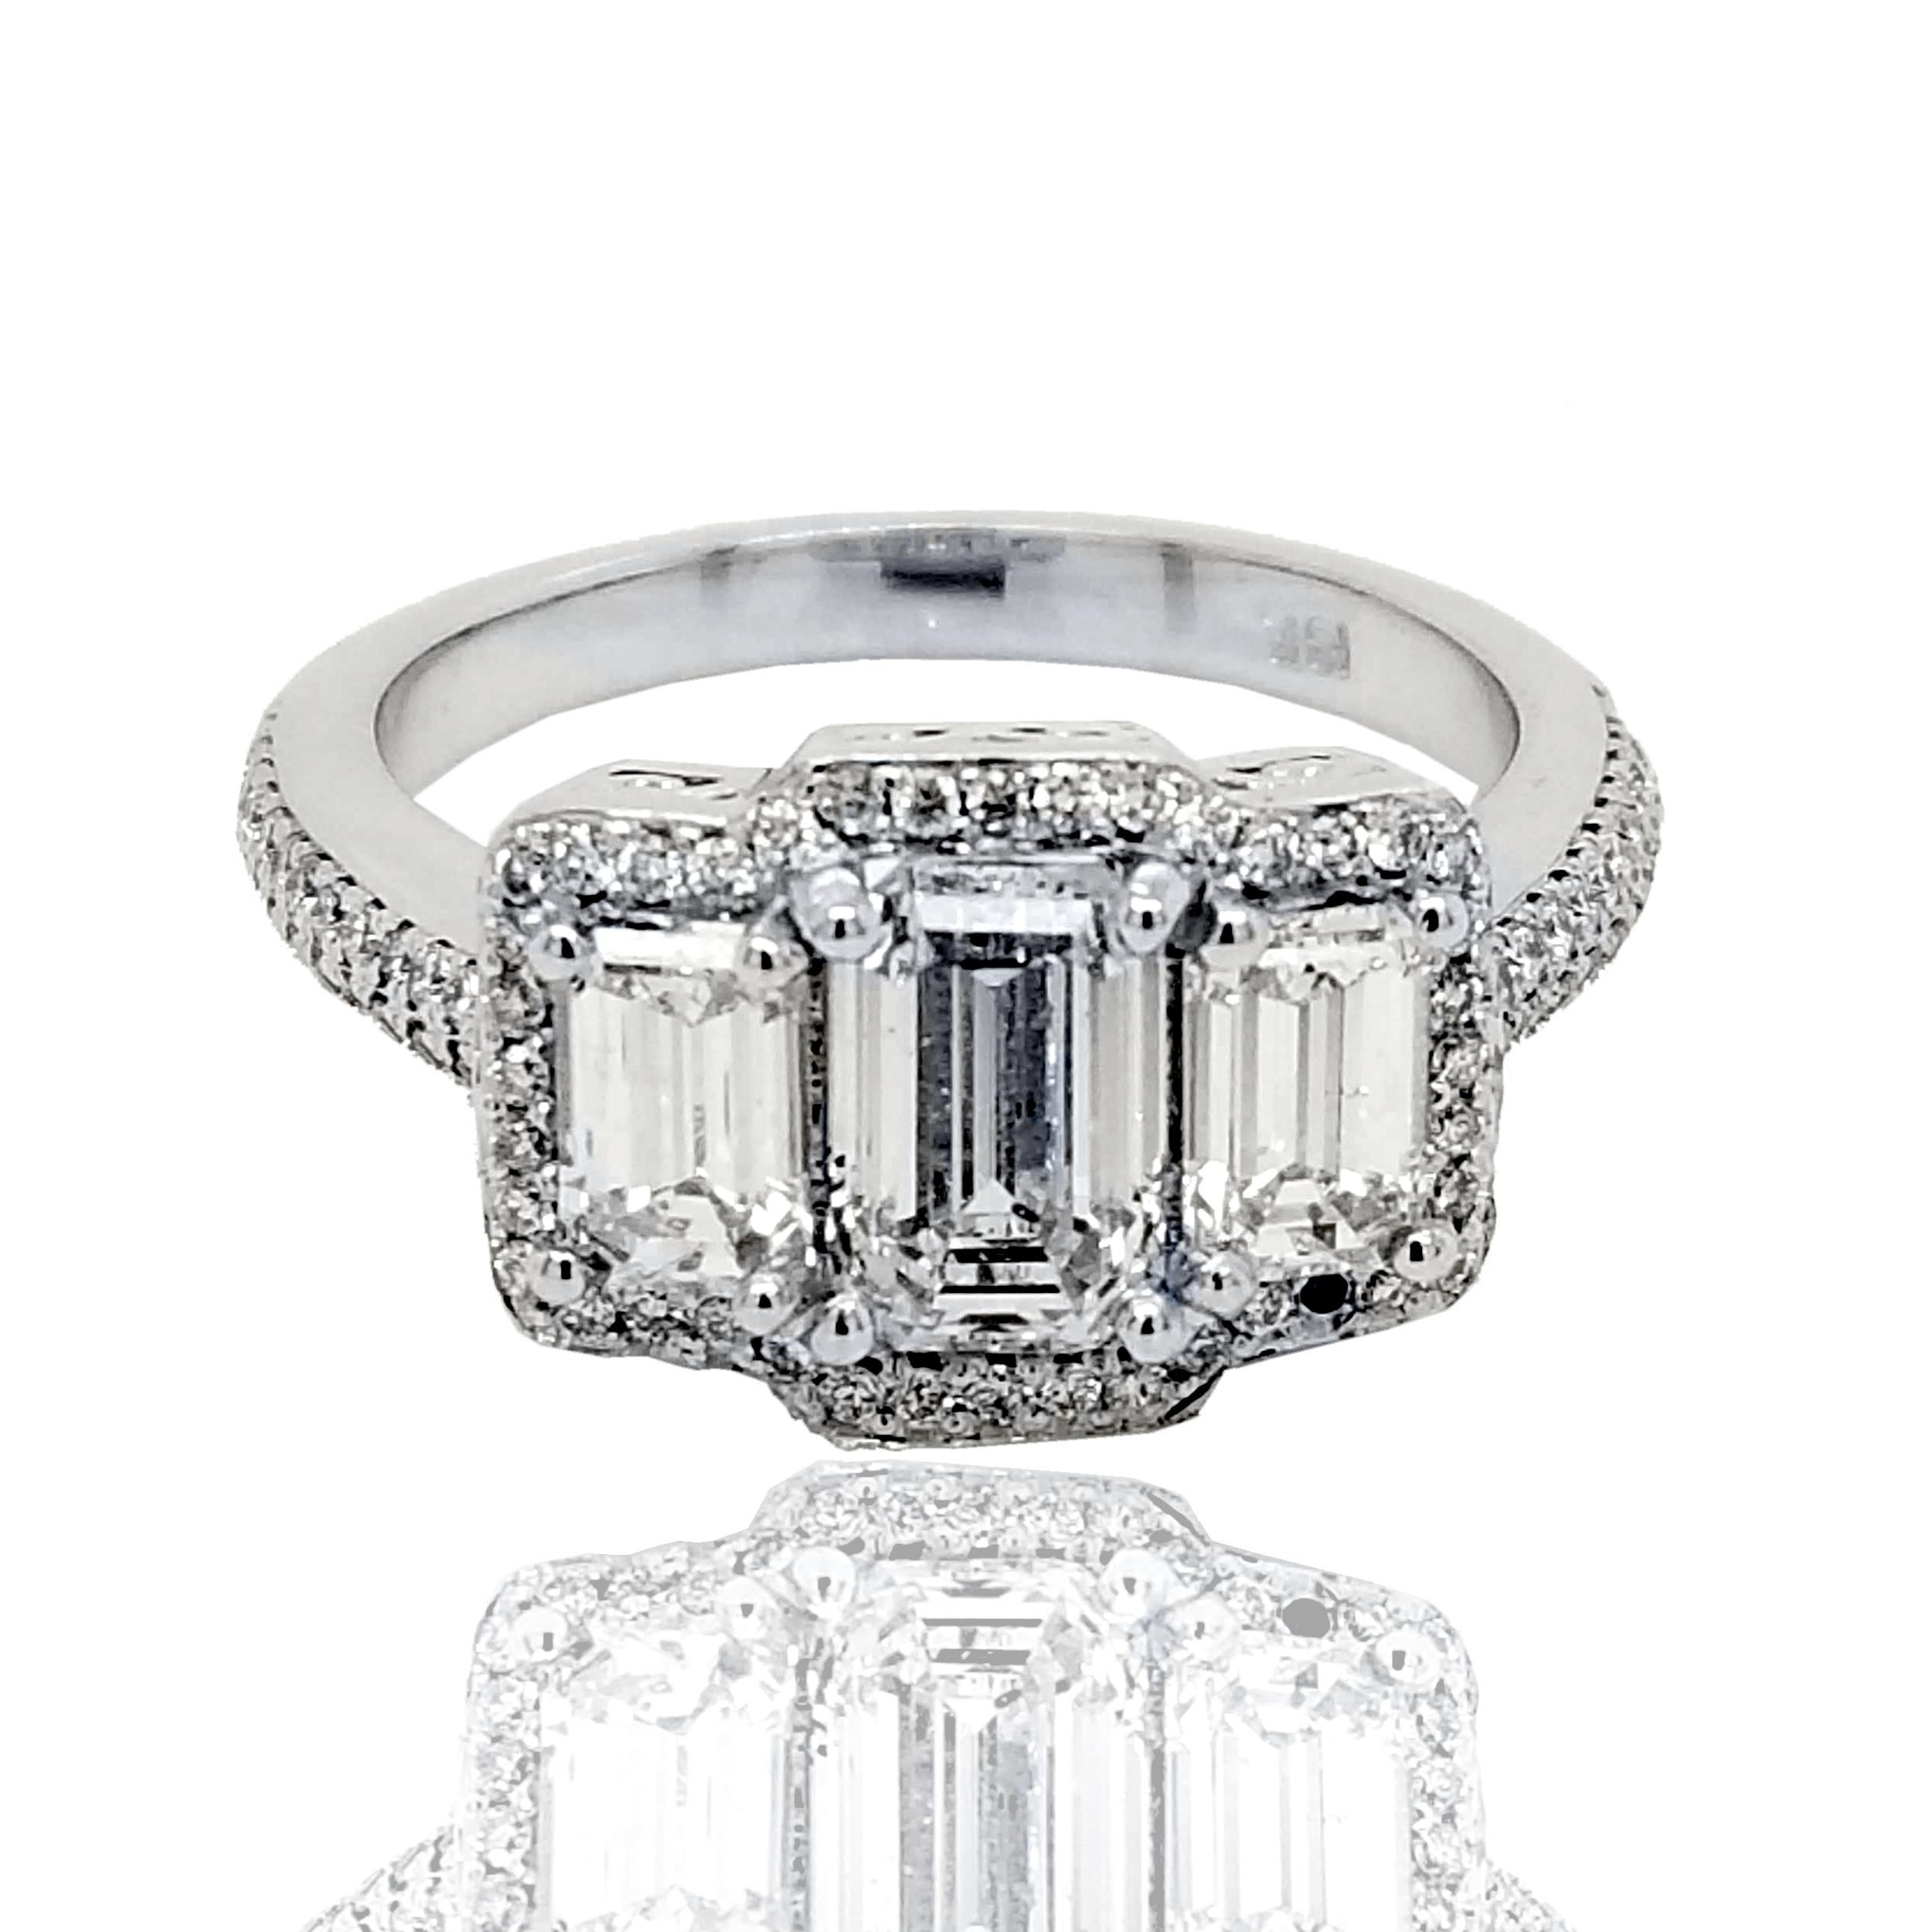 Magnifique diamant central de 1,04 ct de taille émeraude F-G/SI2 serti dans une bague de fiançailles à 3 pierres en or 18 carats avec 2 diamants de taille émeraude.  diamants sur le côté avec le halo et la tige sertis de pavés. Poids total des